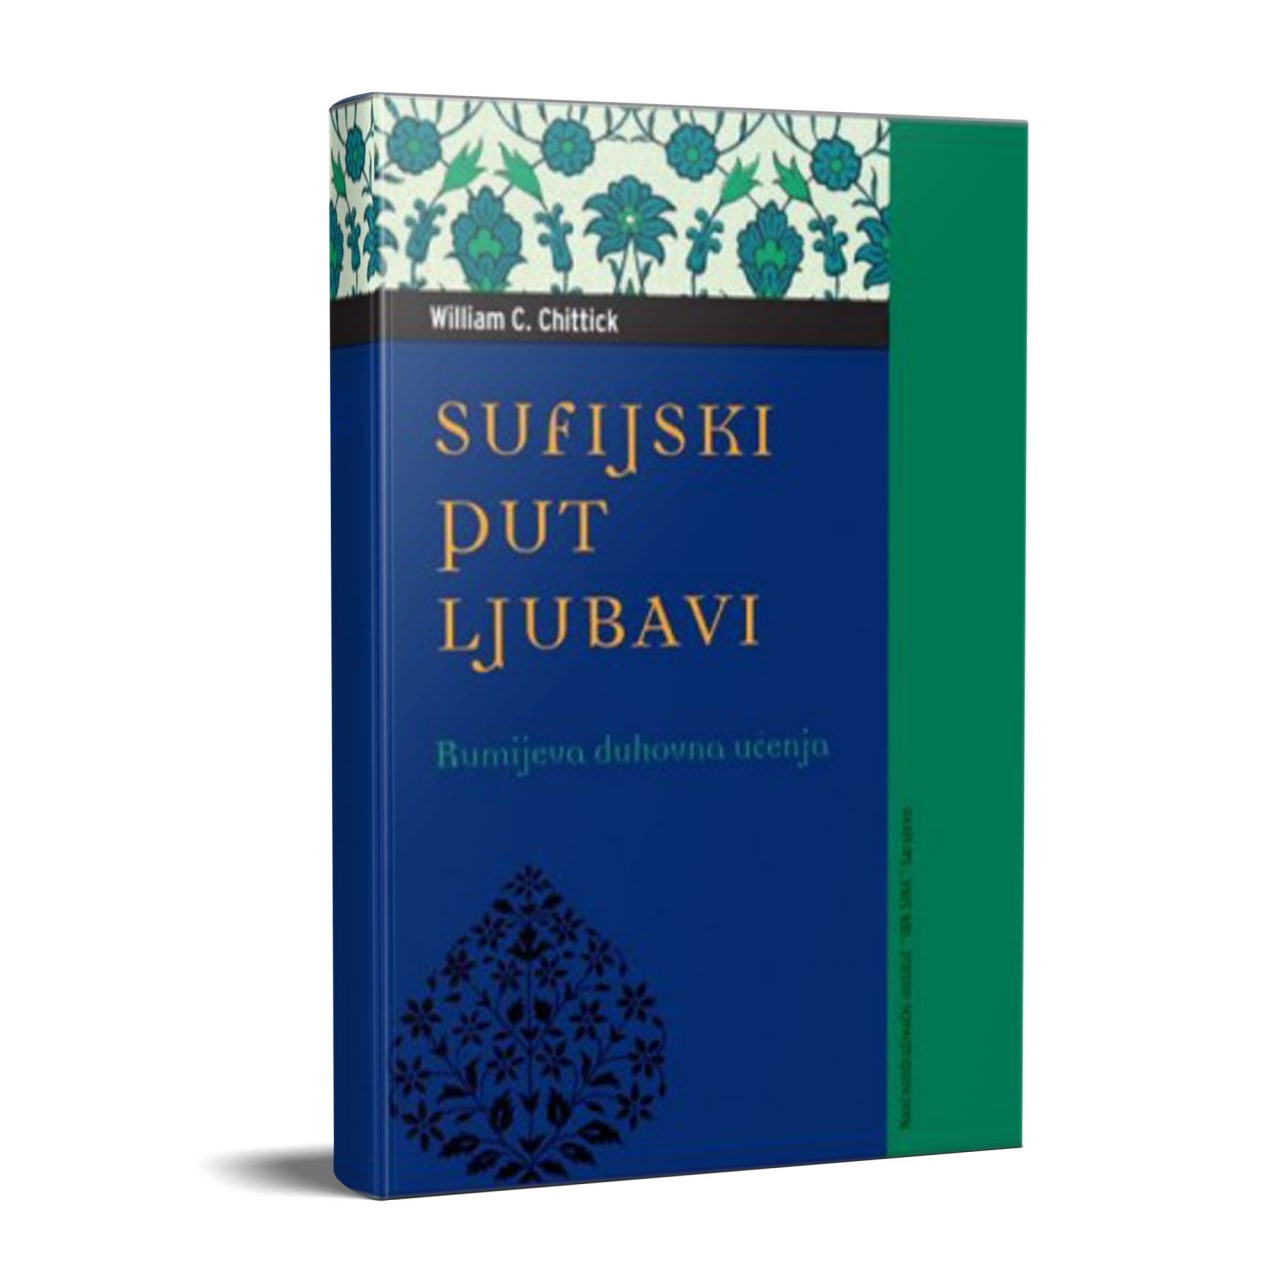 Sufijski put ljubavi